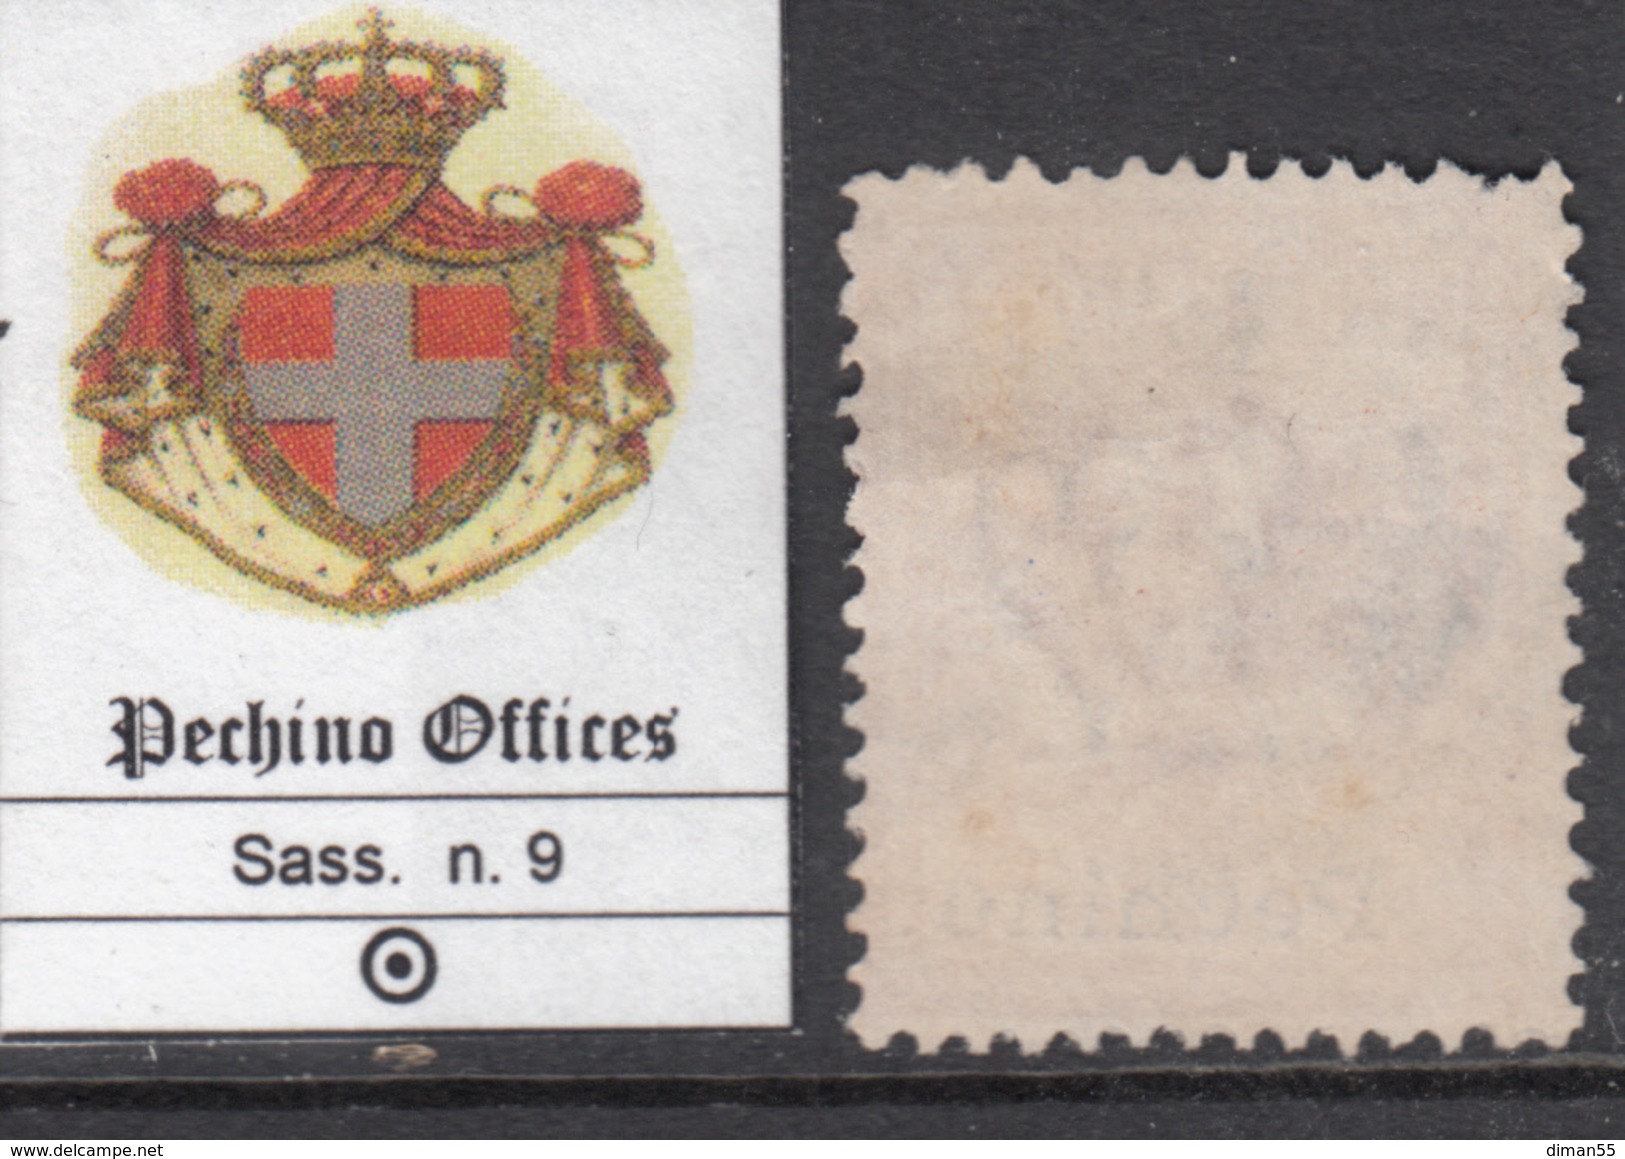 ITALIA - CHINA OFFICES - PECHINO - Sassone N.9 - Cat. 150 Euro - Usato - Gestempelt - Pechino